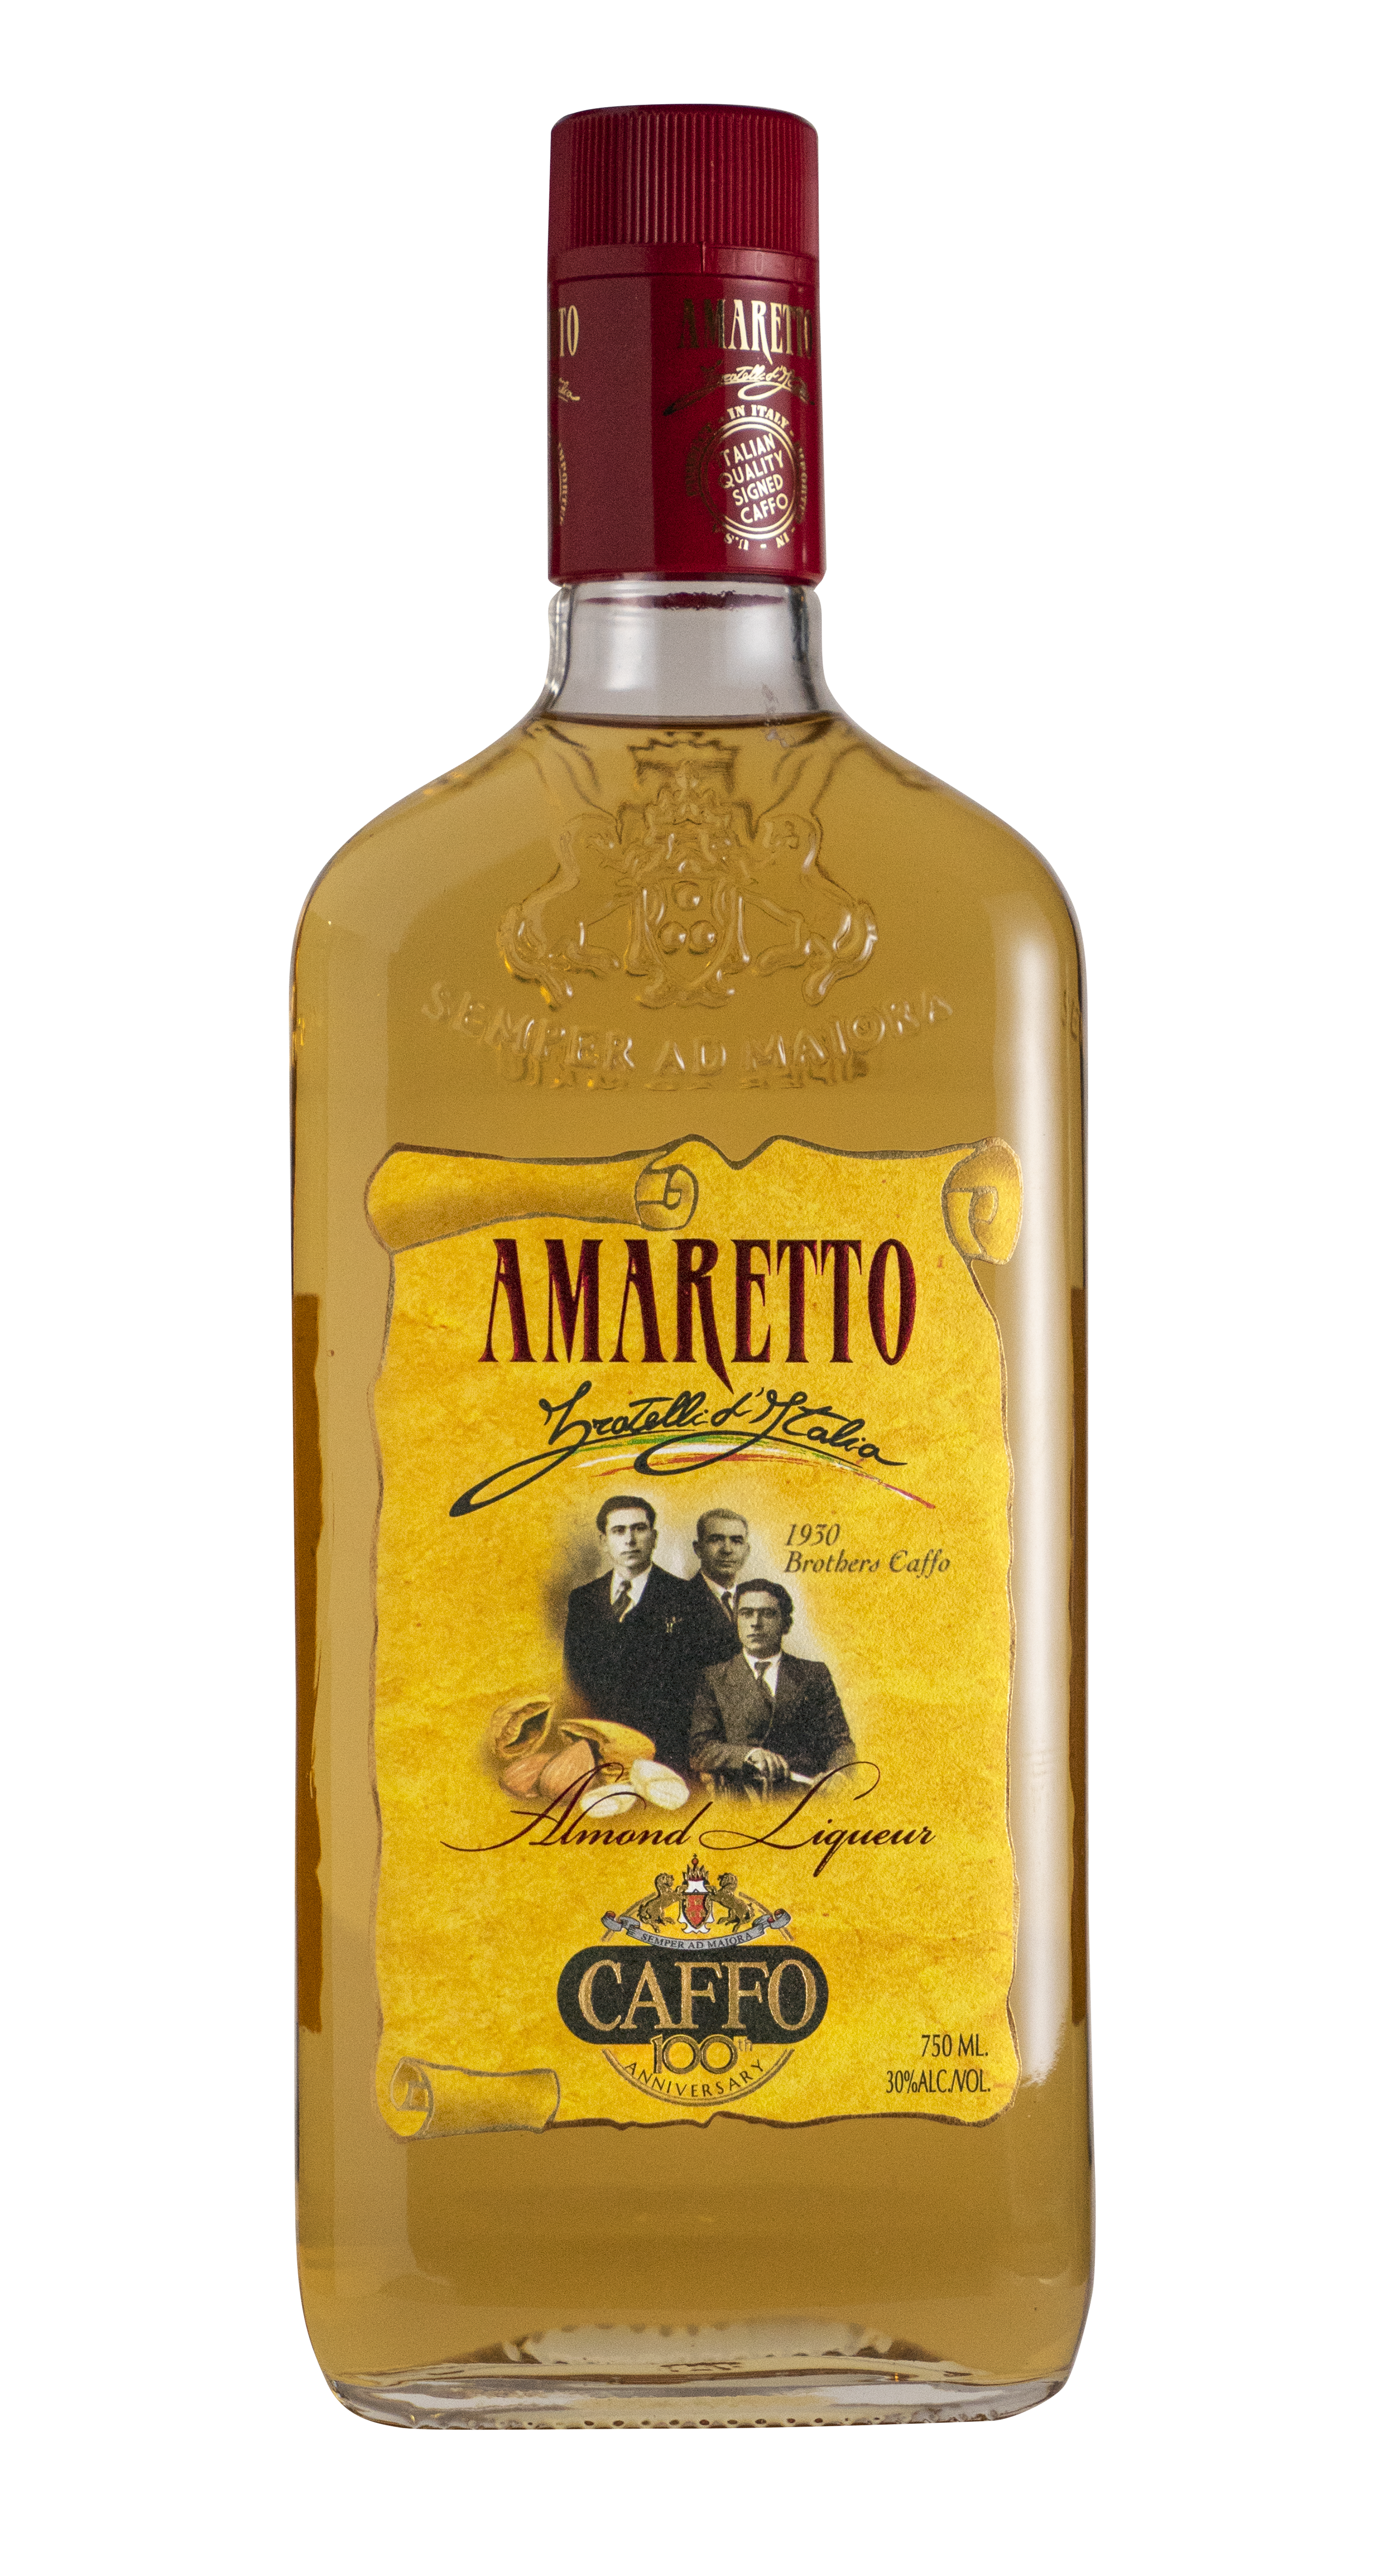 Amaretto, Caffo - Skurnik Wines & Spirits